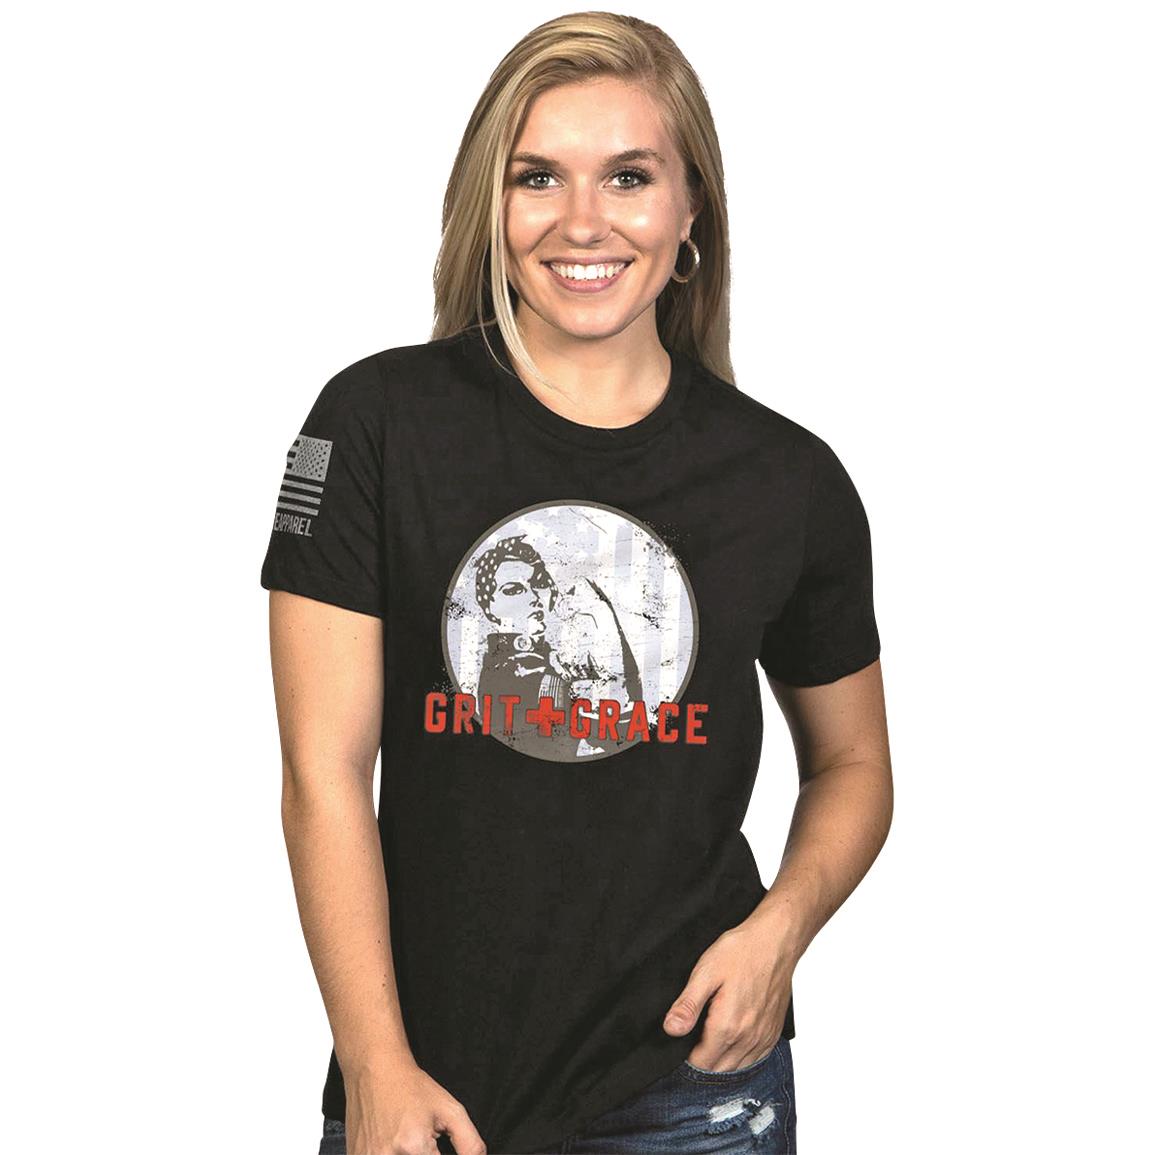 NIne Line Women's Grit and Grace T-shirt, Black